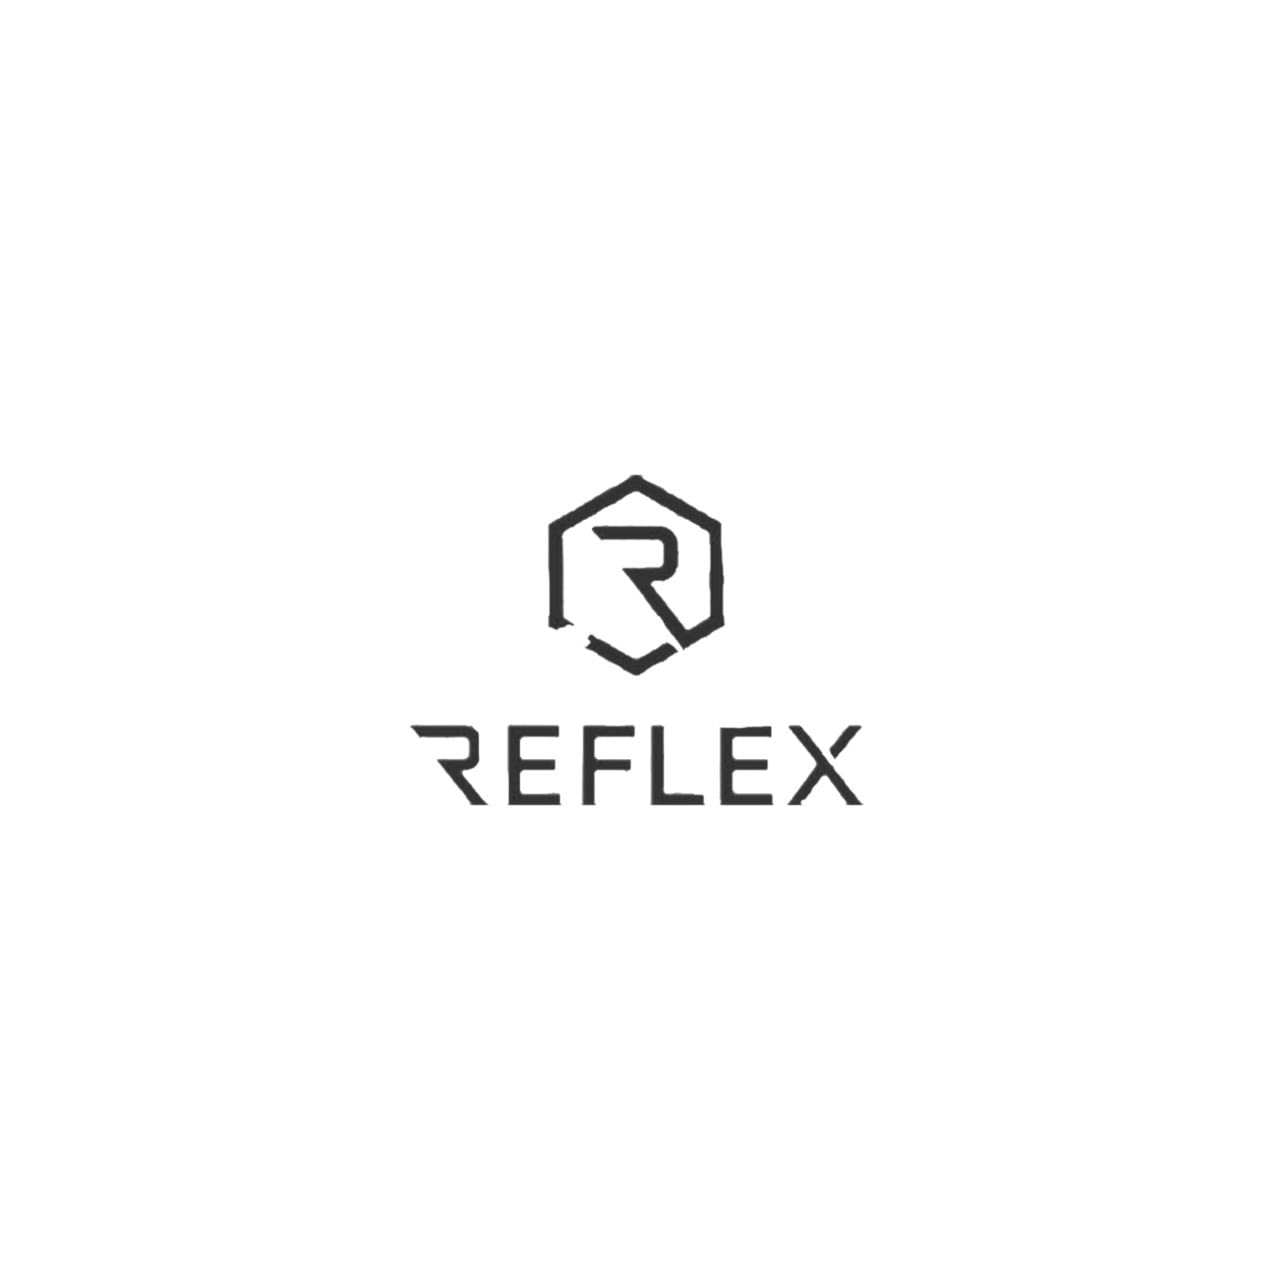 Team Reflex